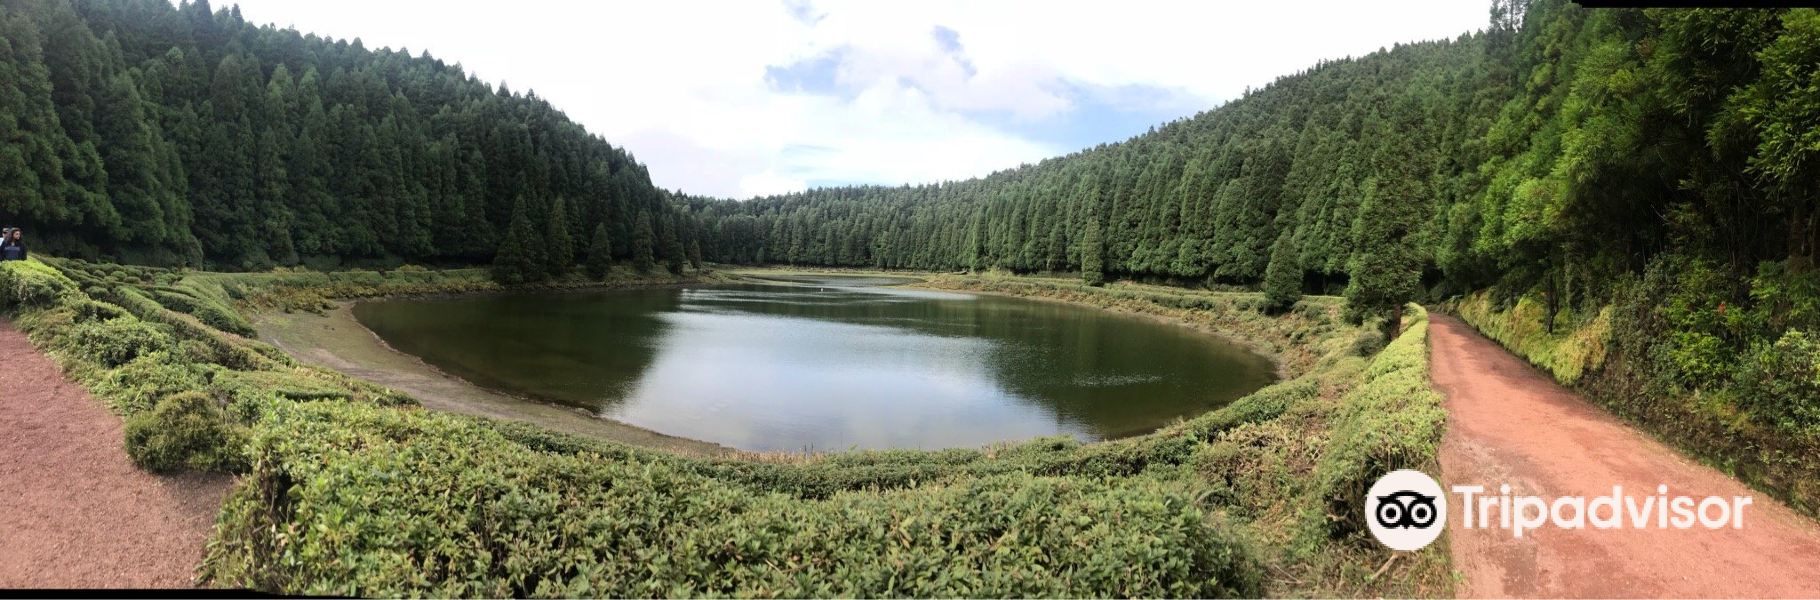 Lagoa das Empadadas旅游景点图片